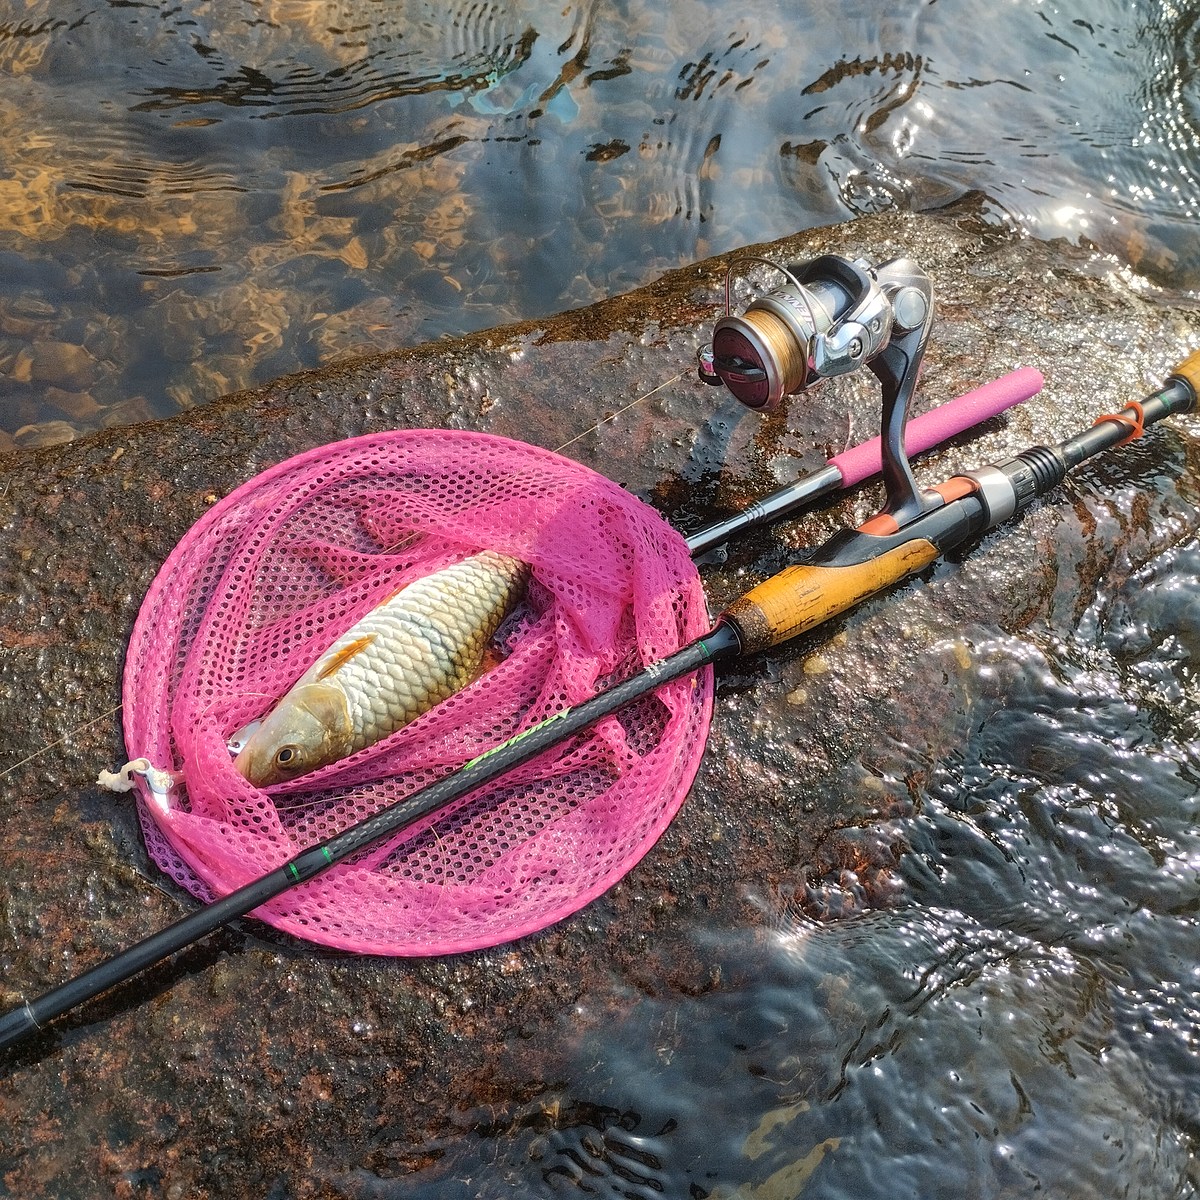 ทริปตกปลากระสูบน้ำไหล ในวันที่ได้แต่ตัวเล็กๆน้อยๆ: SiamFishing : Thailand  Fishing Community